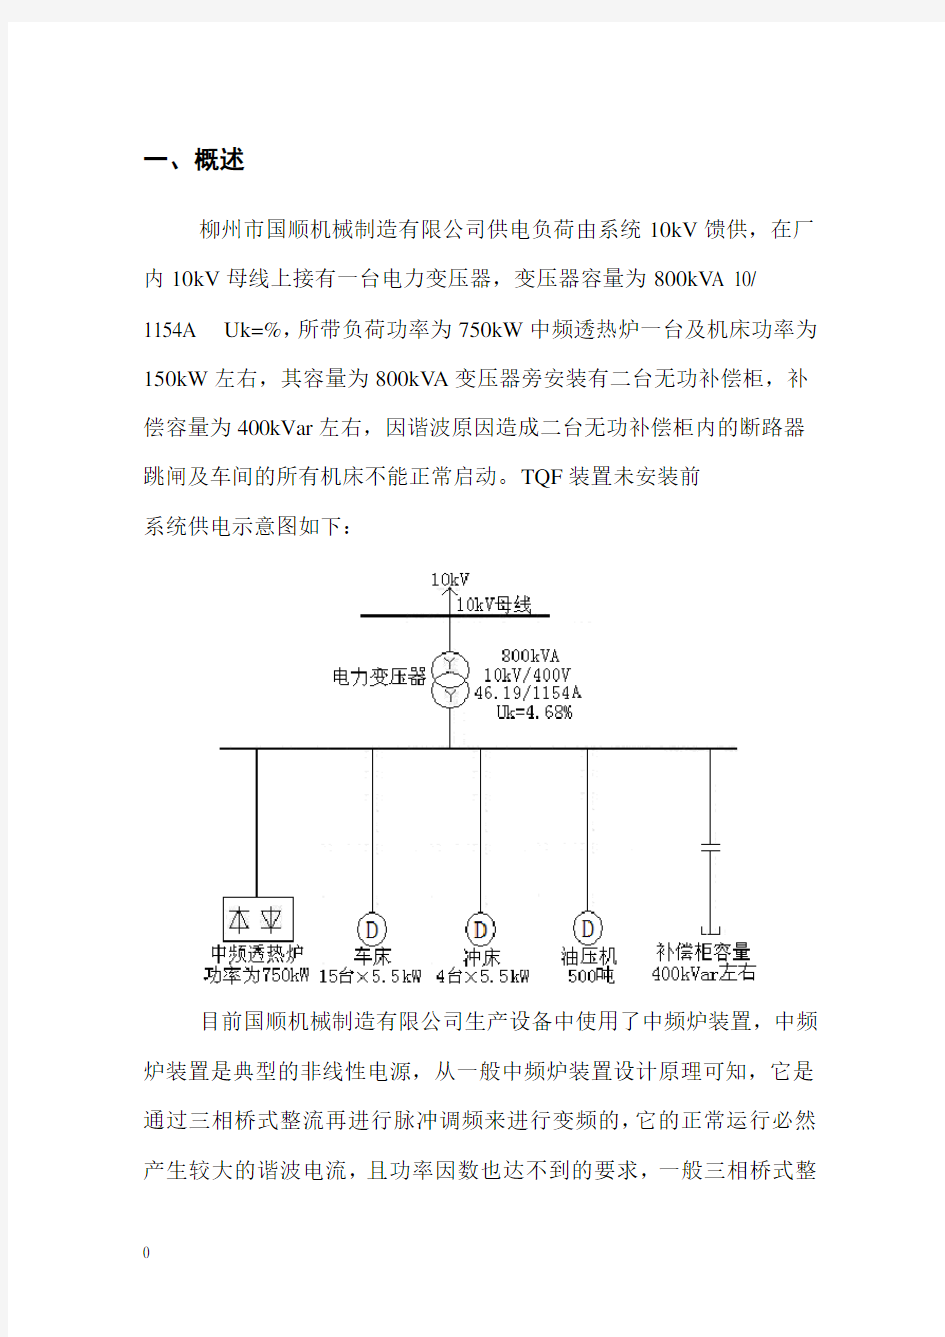 柳州市国顺机械制造有限公司谐波测试报告